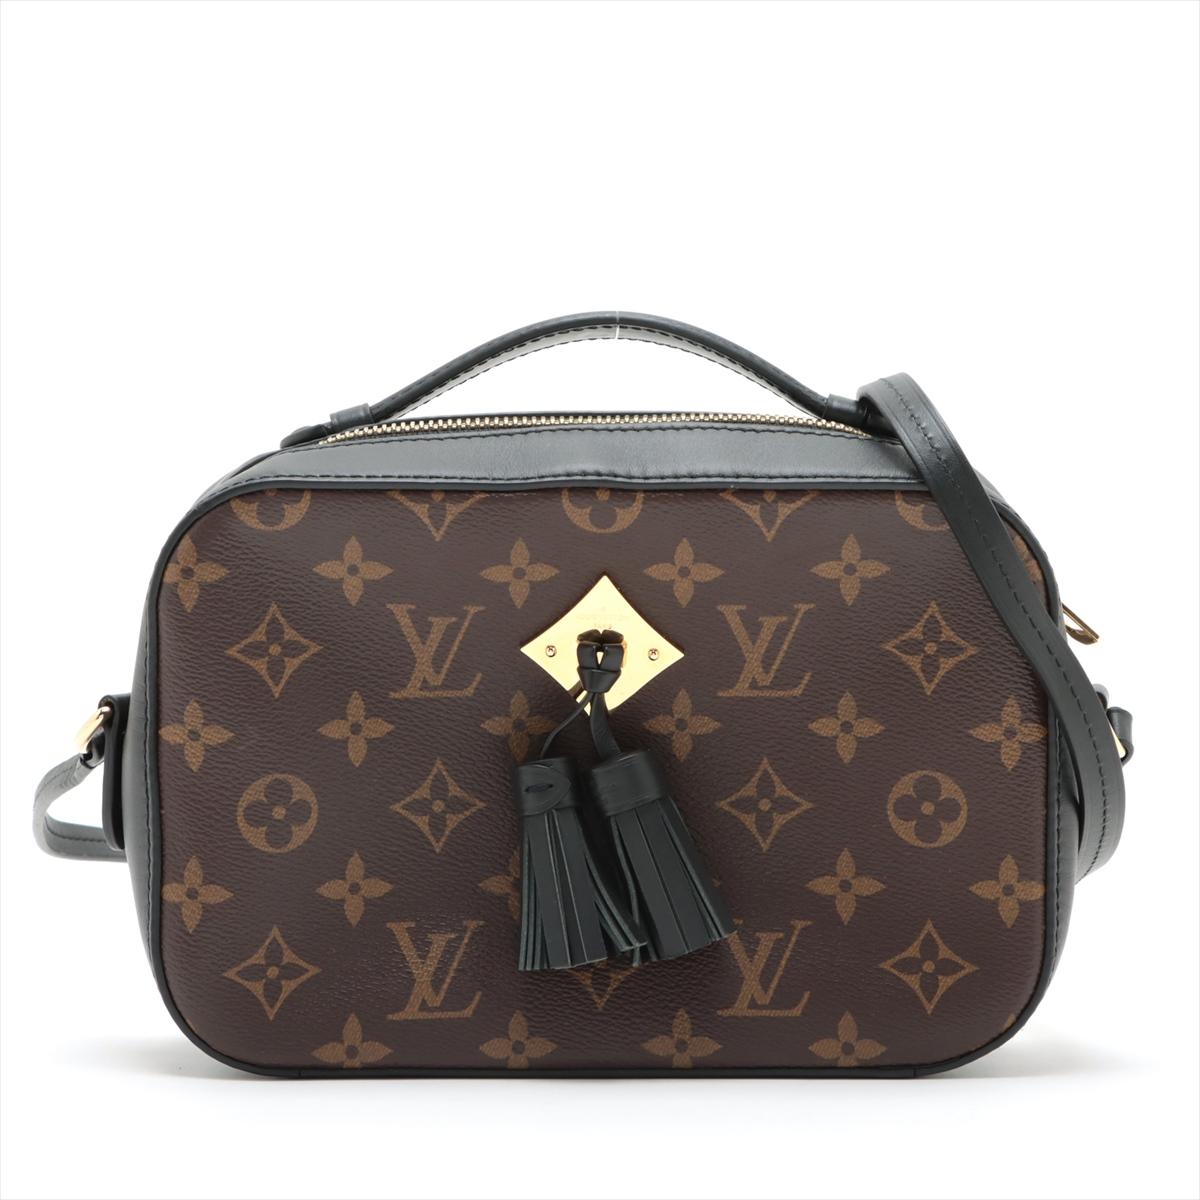 Le Monogram Saintonge de Louis Vuitton est un sac à bandoulière élégant et compact qui met en valeur la toile Monogram emblématique de la marque, reflétant une esthétique intemporelle et sophistiquée. Le sac est orné du monogramme LV immédiatement